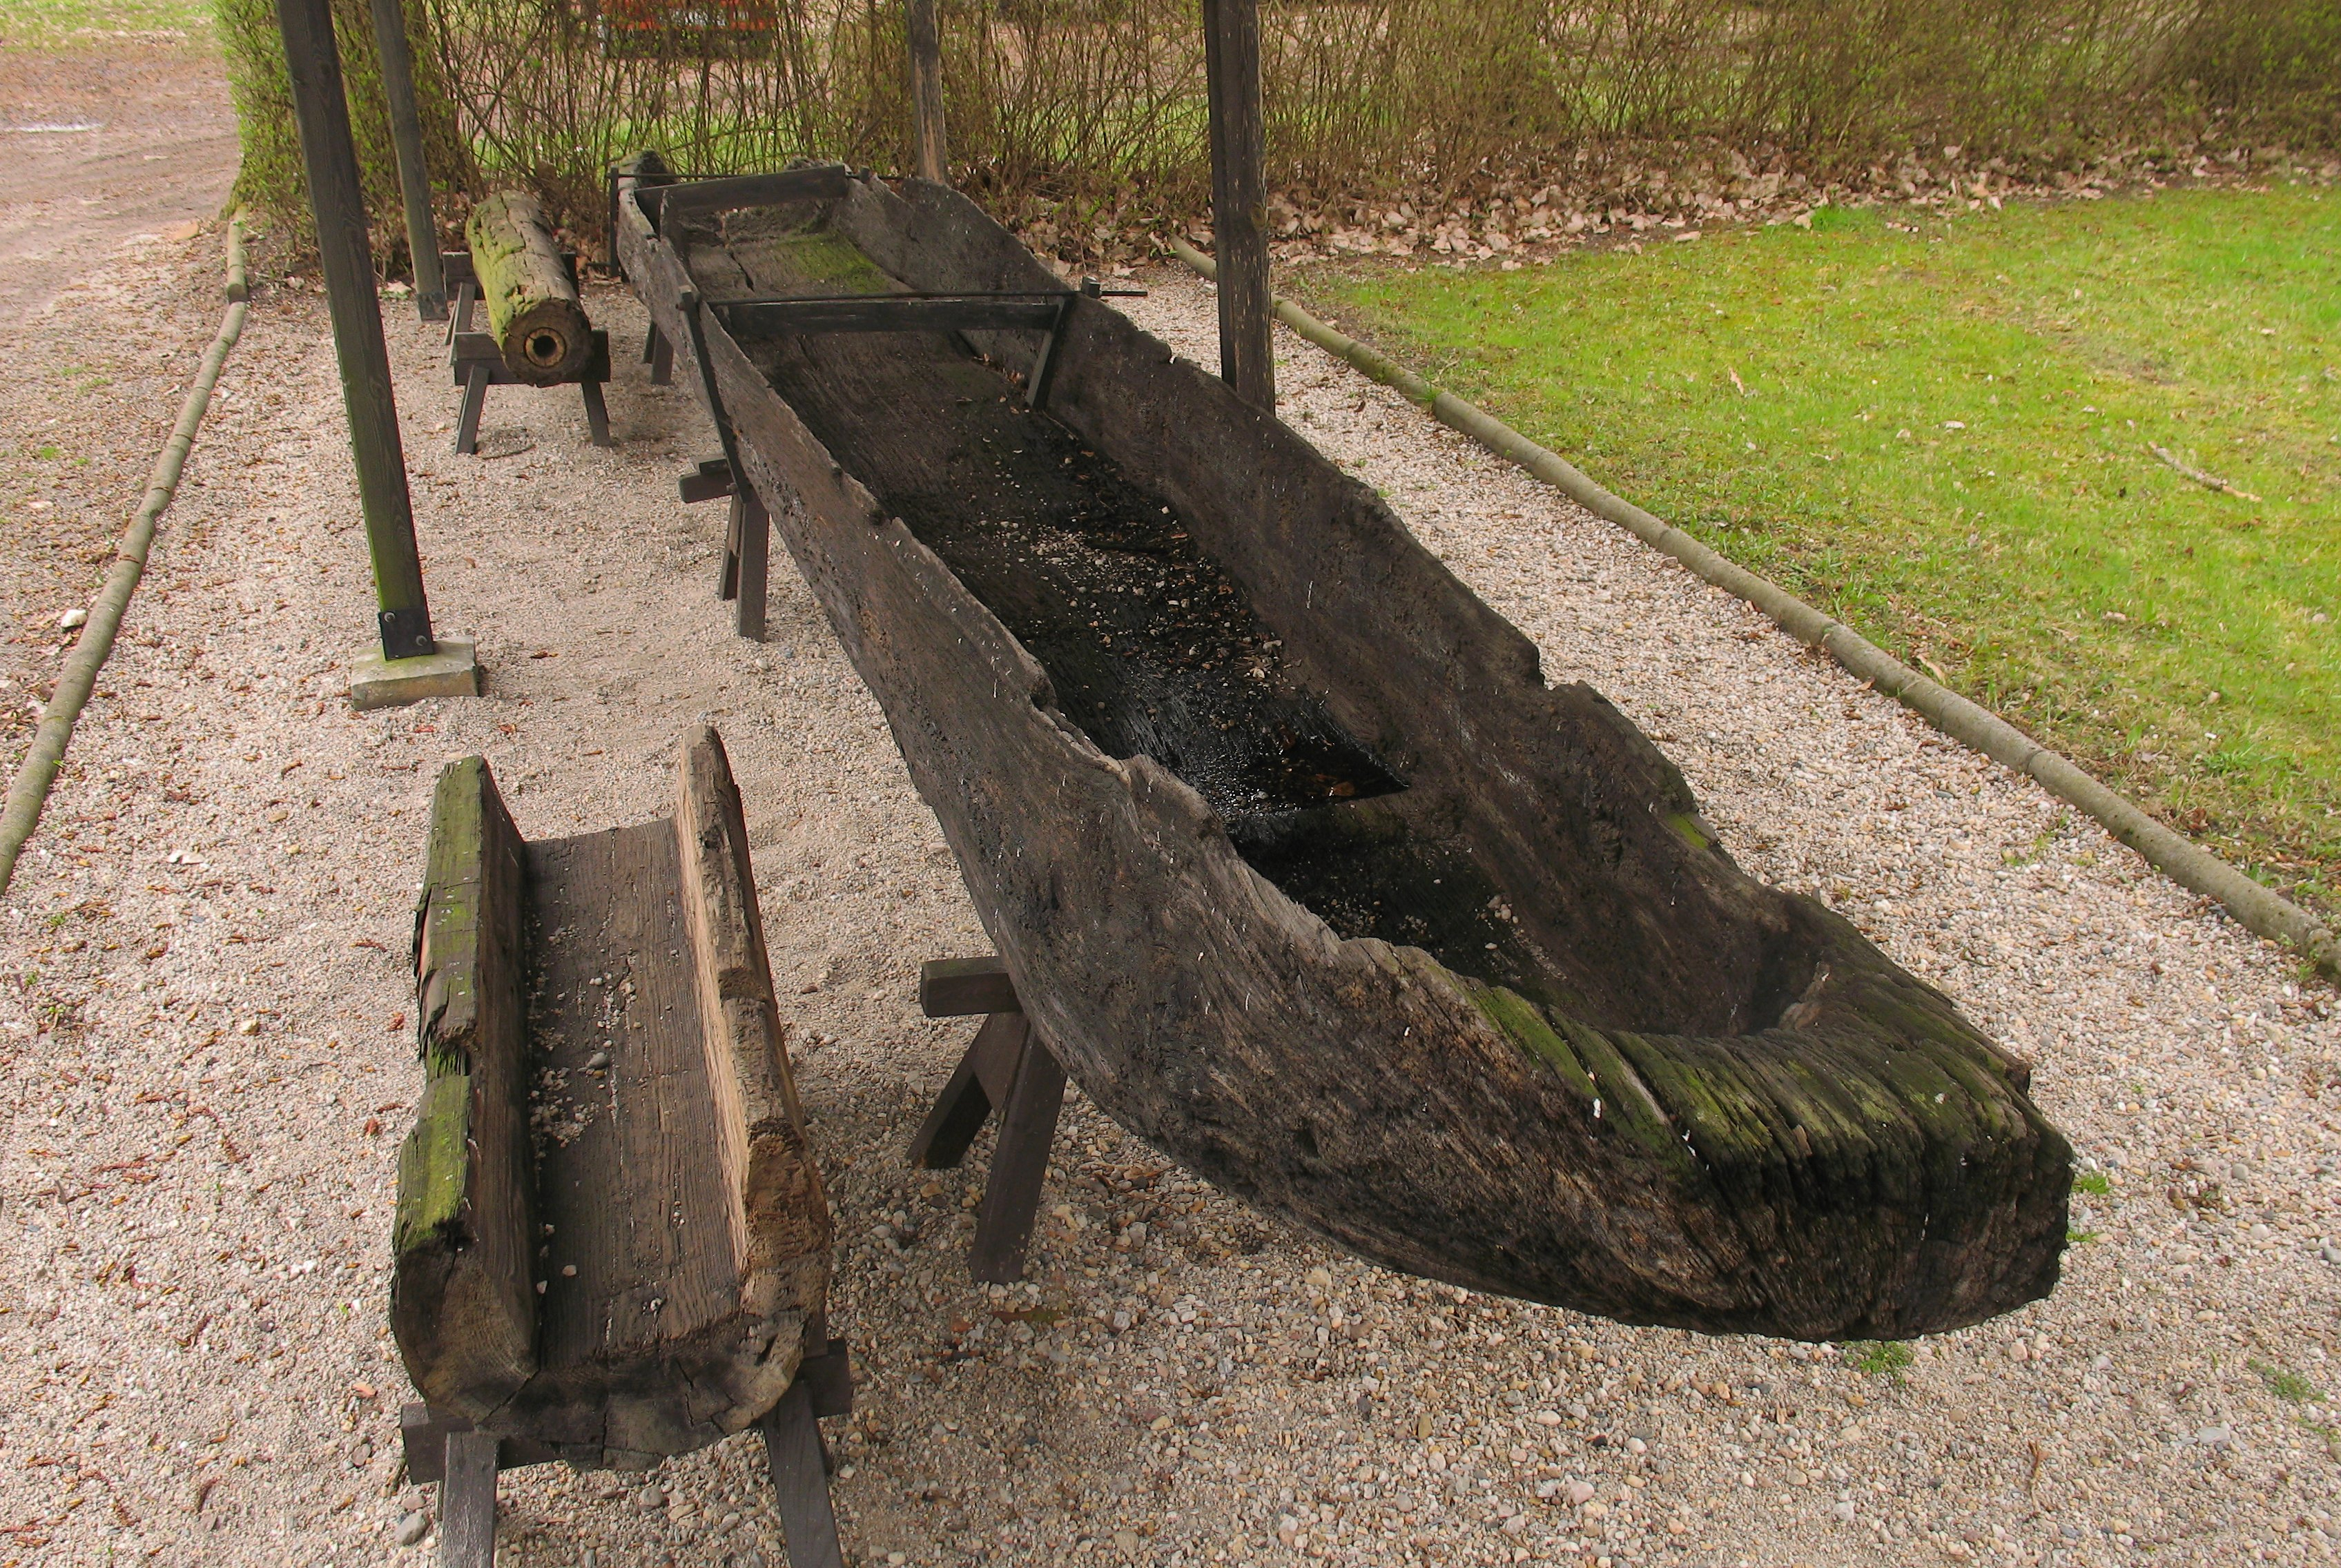 De prehistorische boten lijken onder mee op deze Slavische kano uit de tiende eeuw